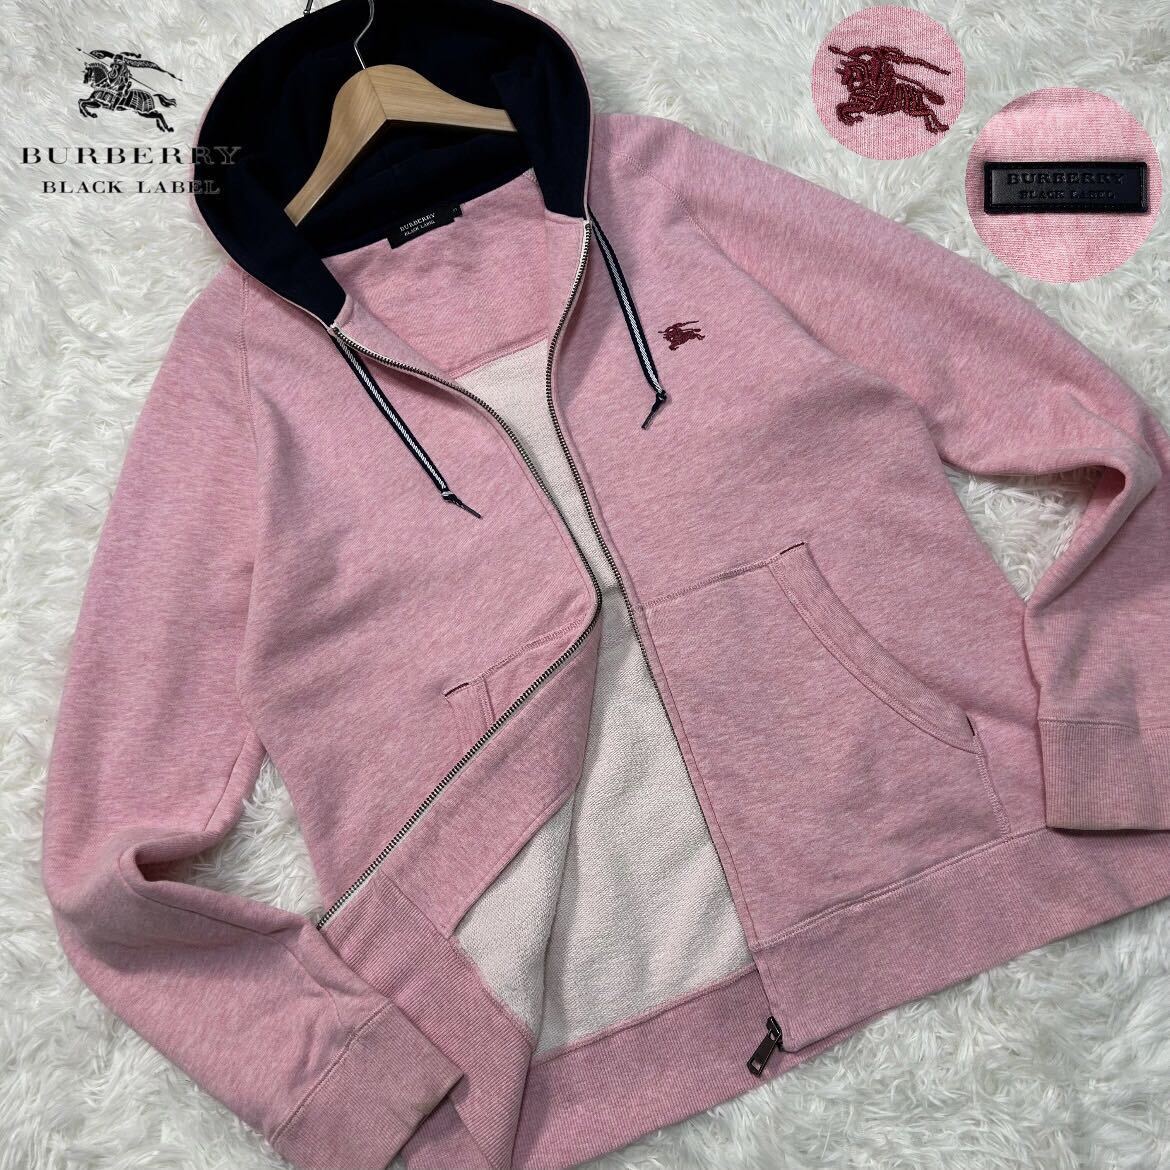  превосходный товар /L размер * Burberry Black Label шланг вышивка Zip Parker блузон жакет незначительный розовый кожа Logo BURBERRY BLACK LABEL